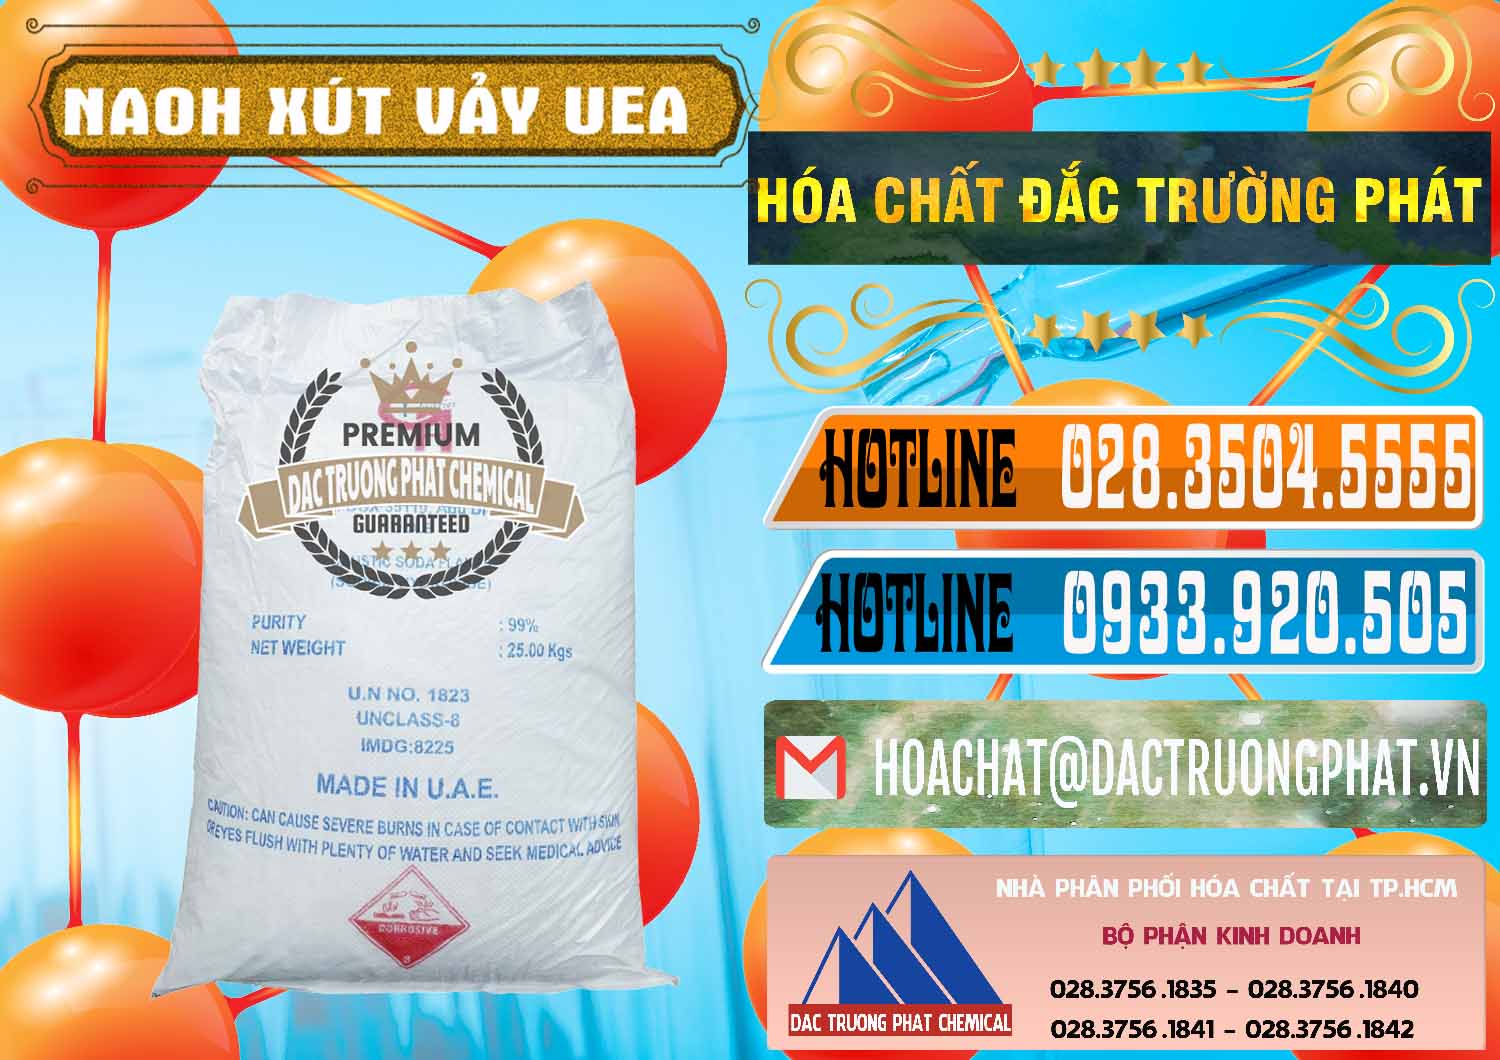 Cty chuyên bán và cung ứng Xút Vảy - NaOH Vảy UAE Iran - 0432 - Nơi phân phối - bán hóa chất tại TP.HCM - stmp.net